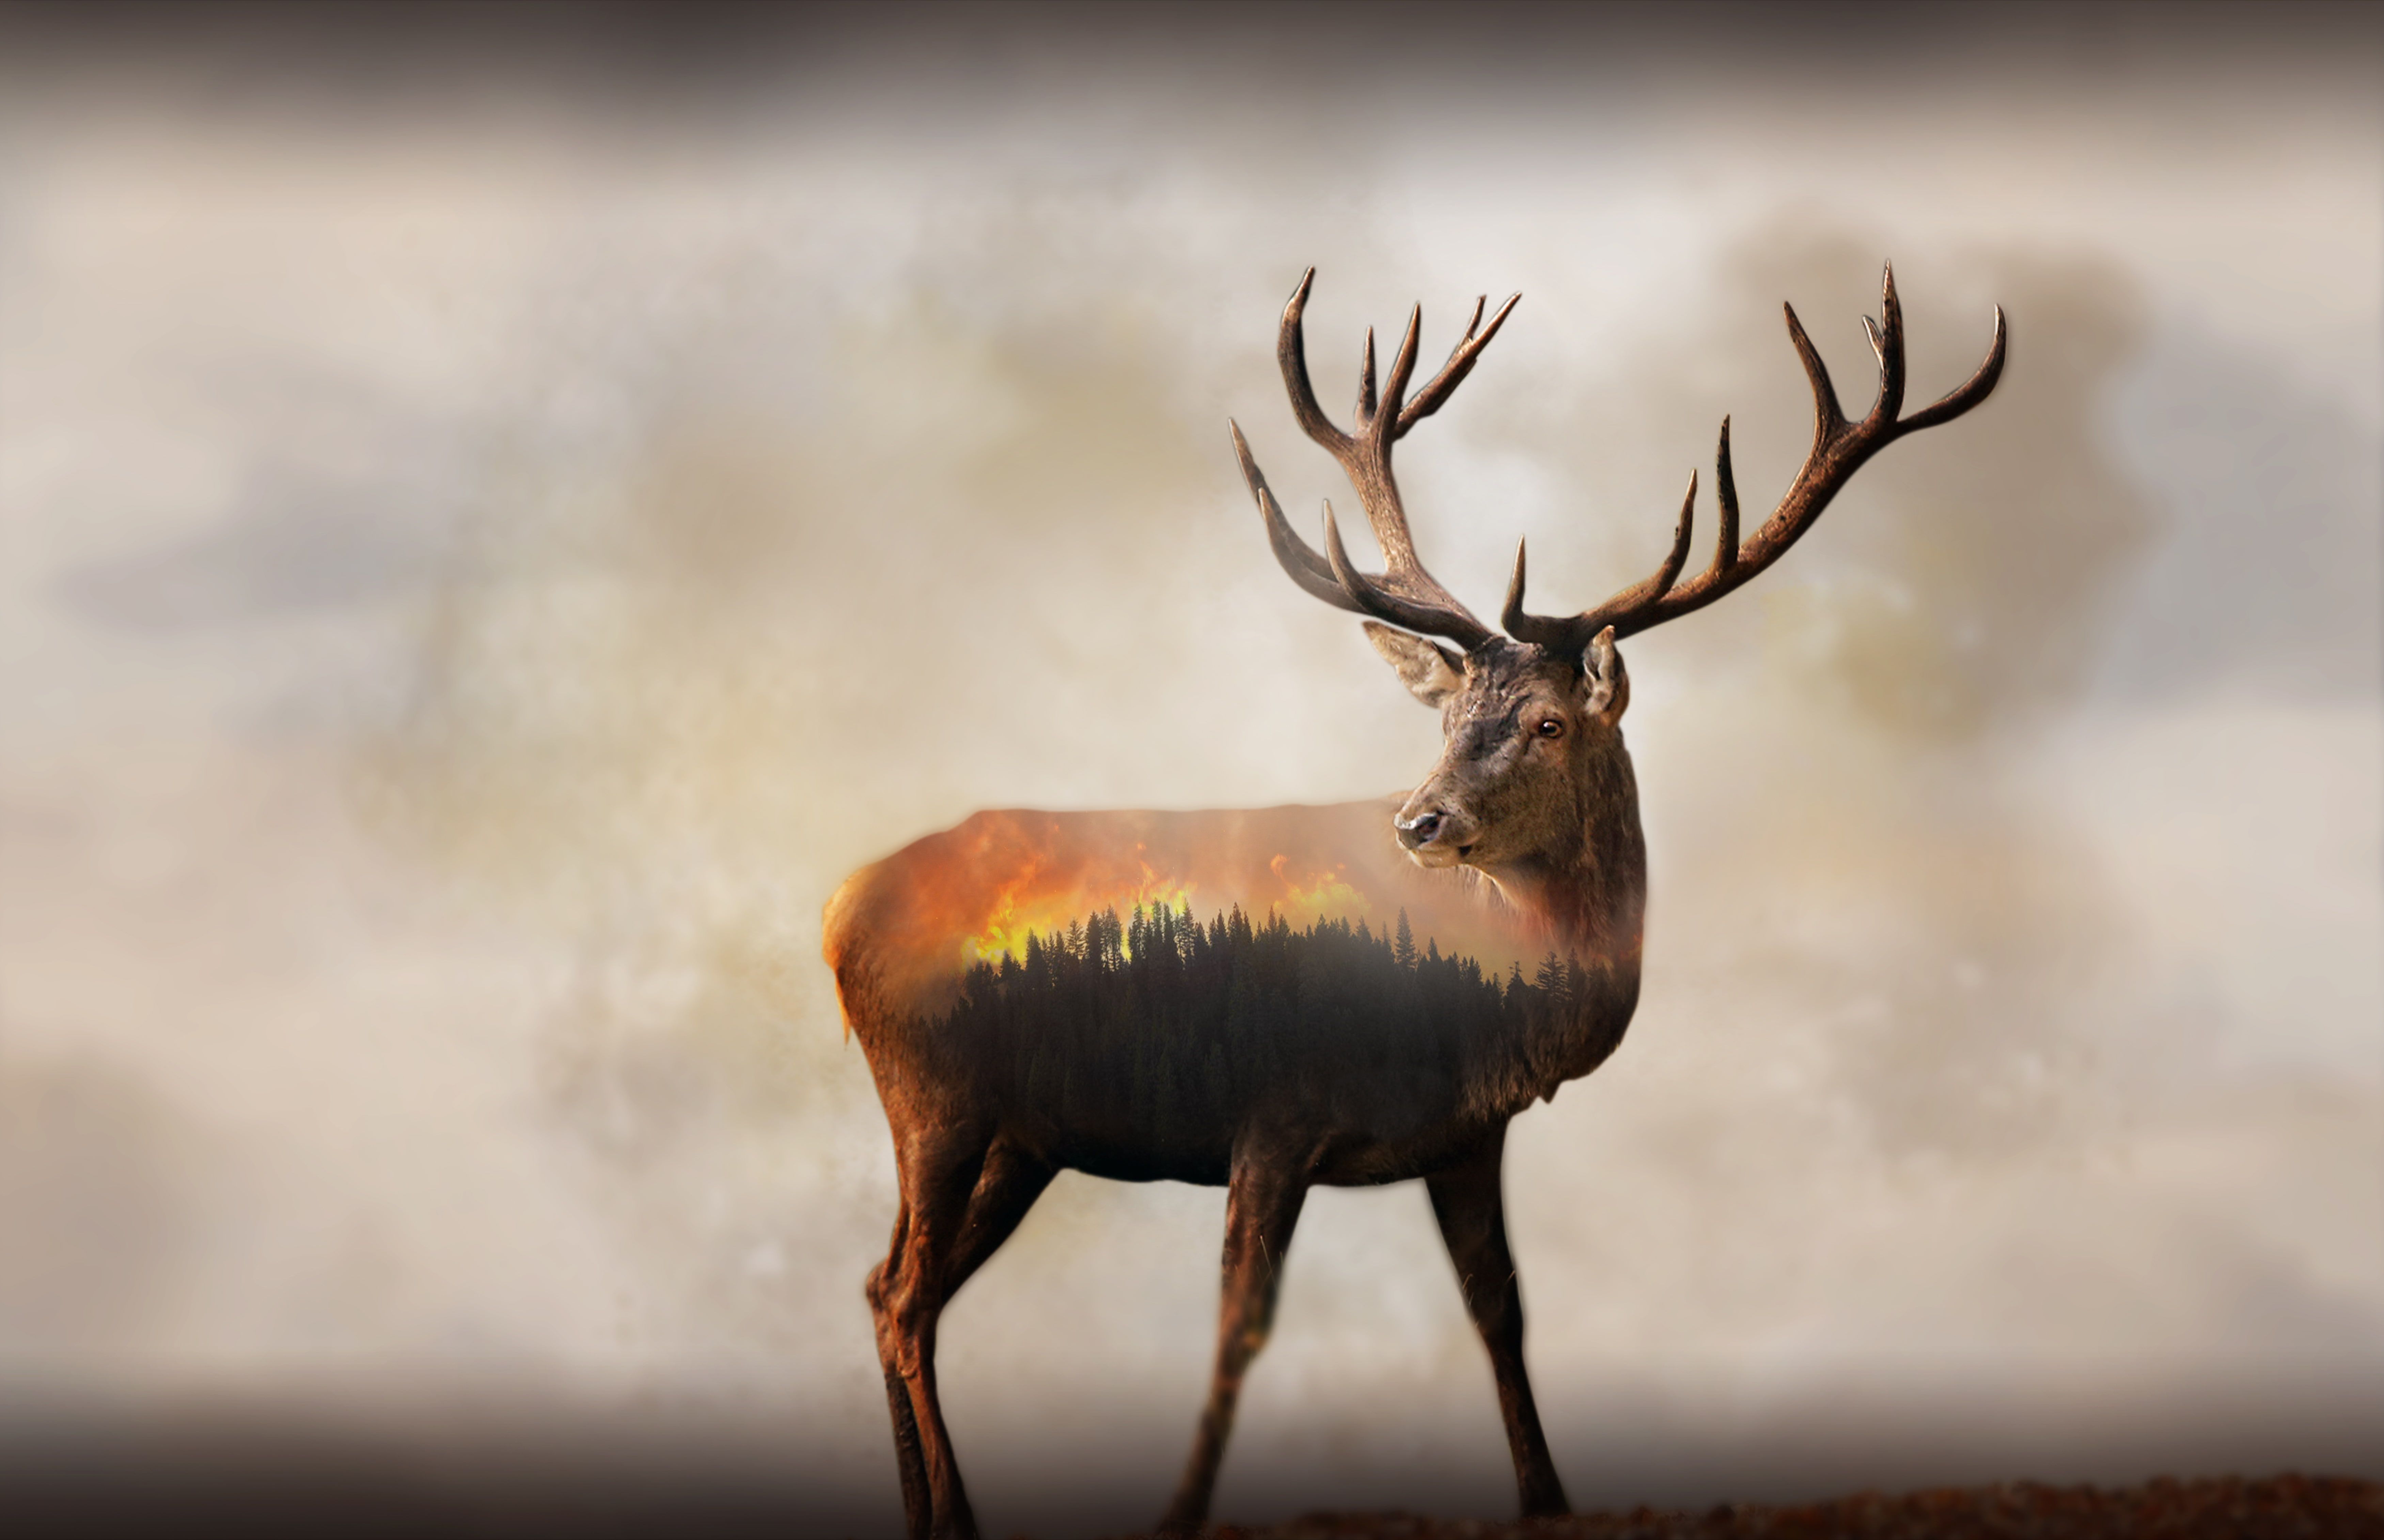 HD wallpaper: 8K, Forest, 4K, Fire, Deer, Double exposure. Fox illustration, Deer illustration, Double exposure